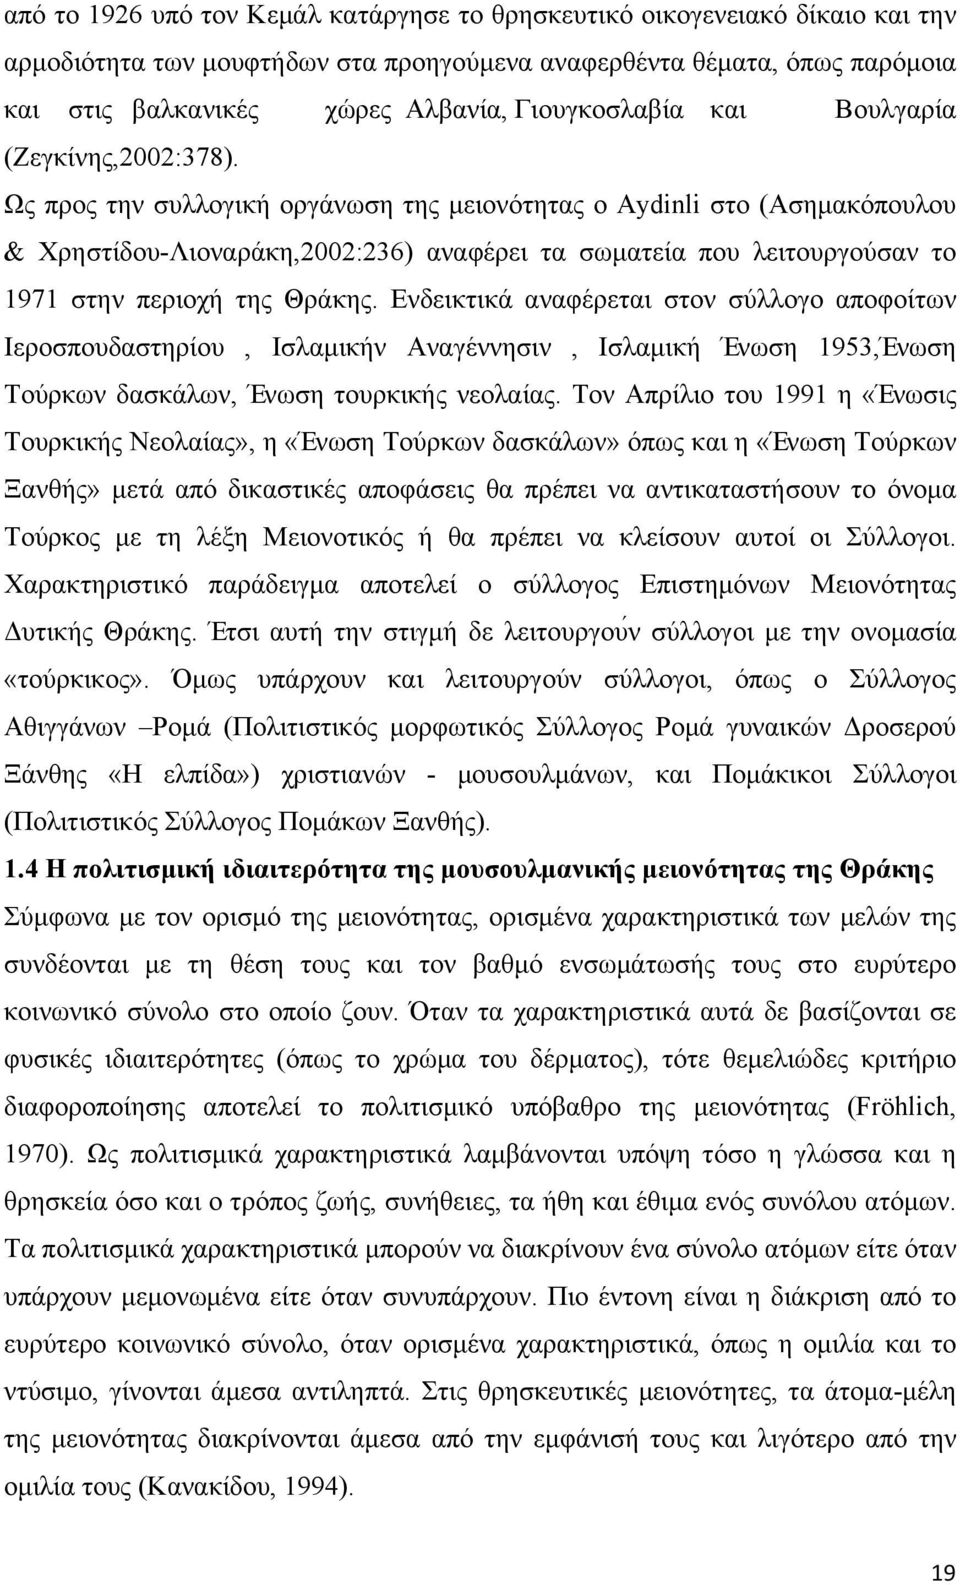 Ως προς την συλλογική οργάνωση της µειονότητας ο Aydinli στο (Ασηµακόπουλου & Χρηστίδου-Λιοναράκη,2002:236) αναφέρει τα σωµατεία που λειτουργούσαν το 1971 στην περιοχή της Θράκης.